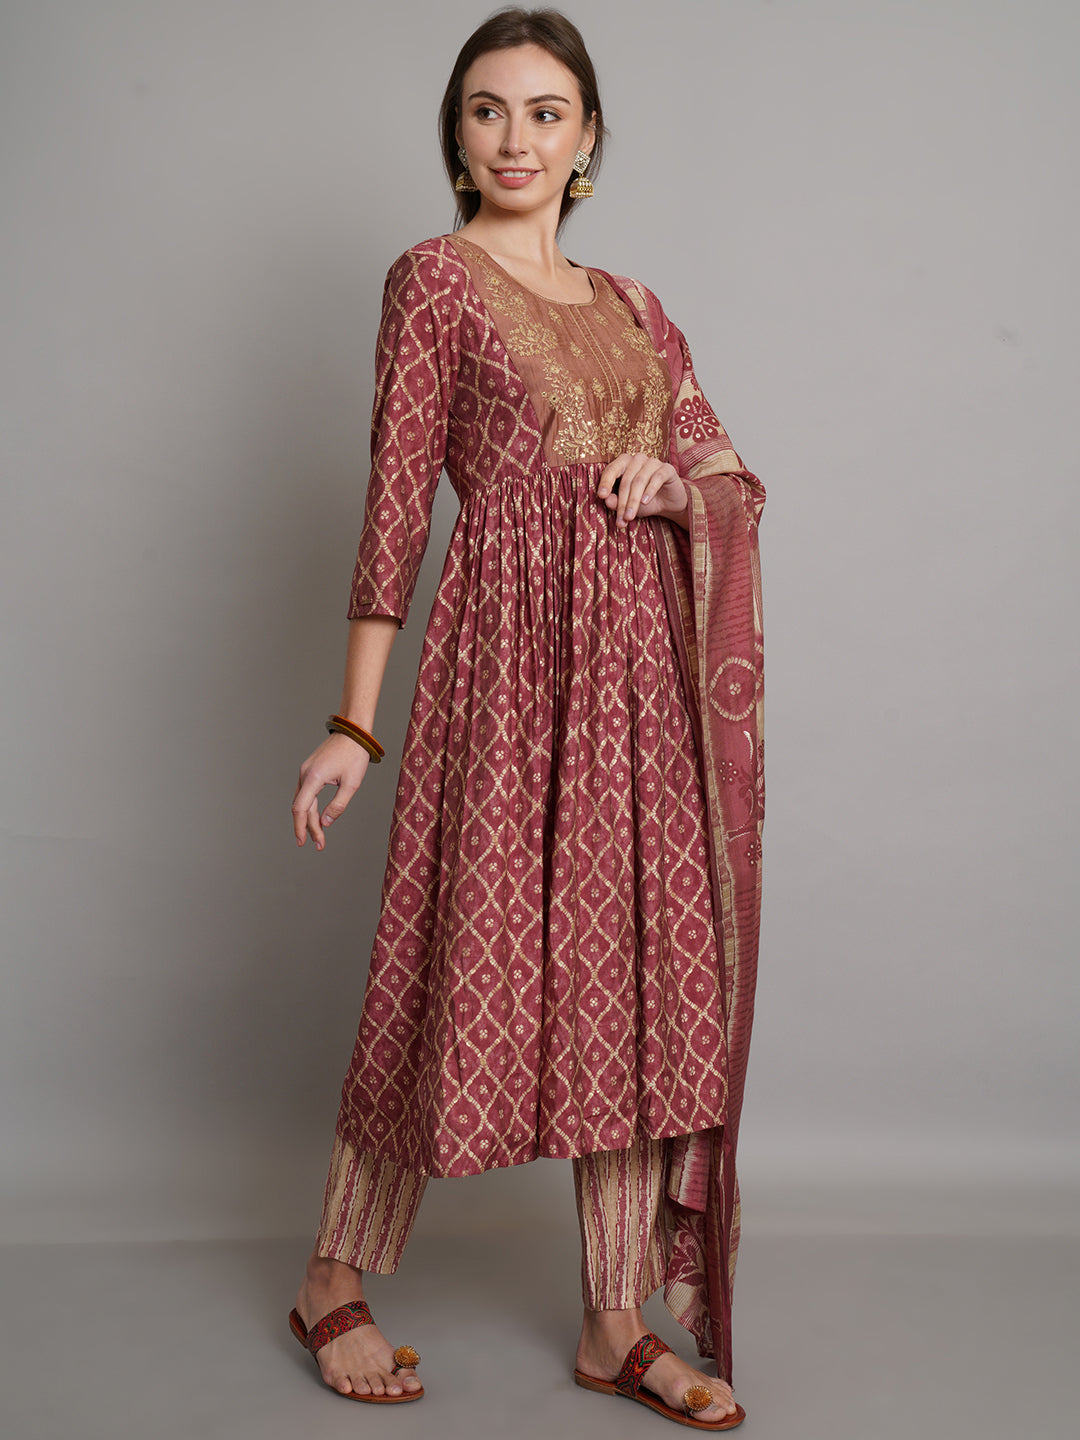 Bandhani Printed Flared Kurta With Trouser & Dupatta Set - ARH1486M